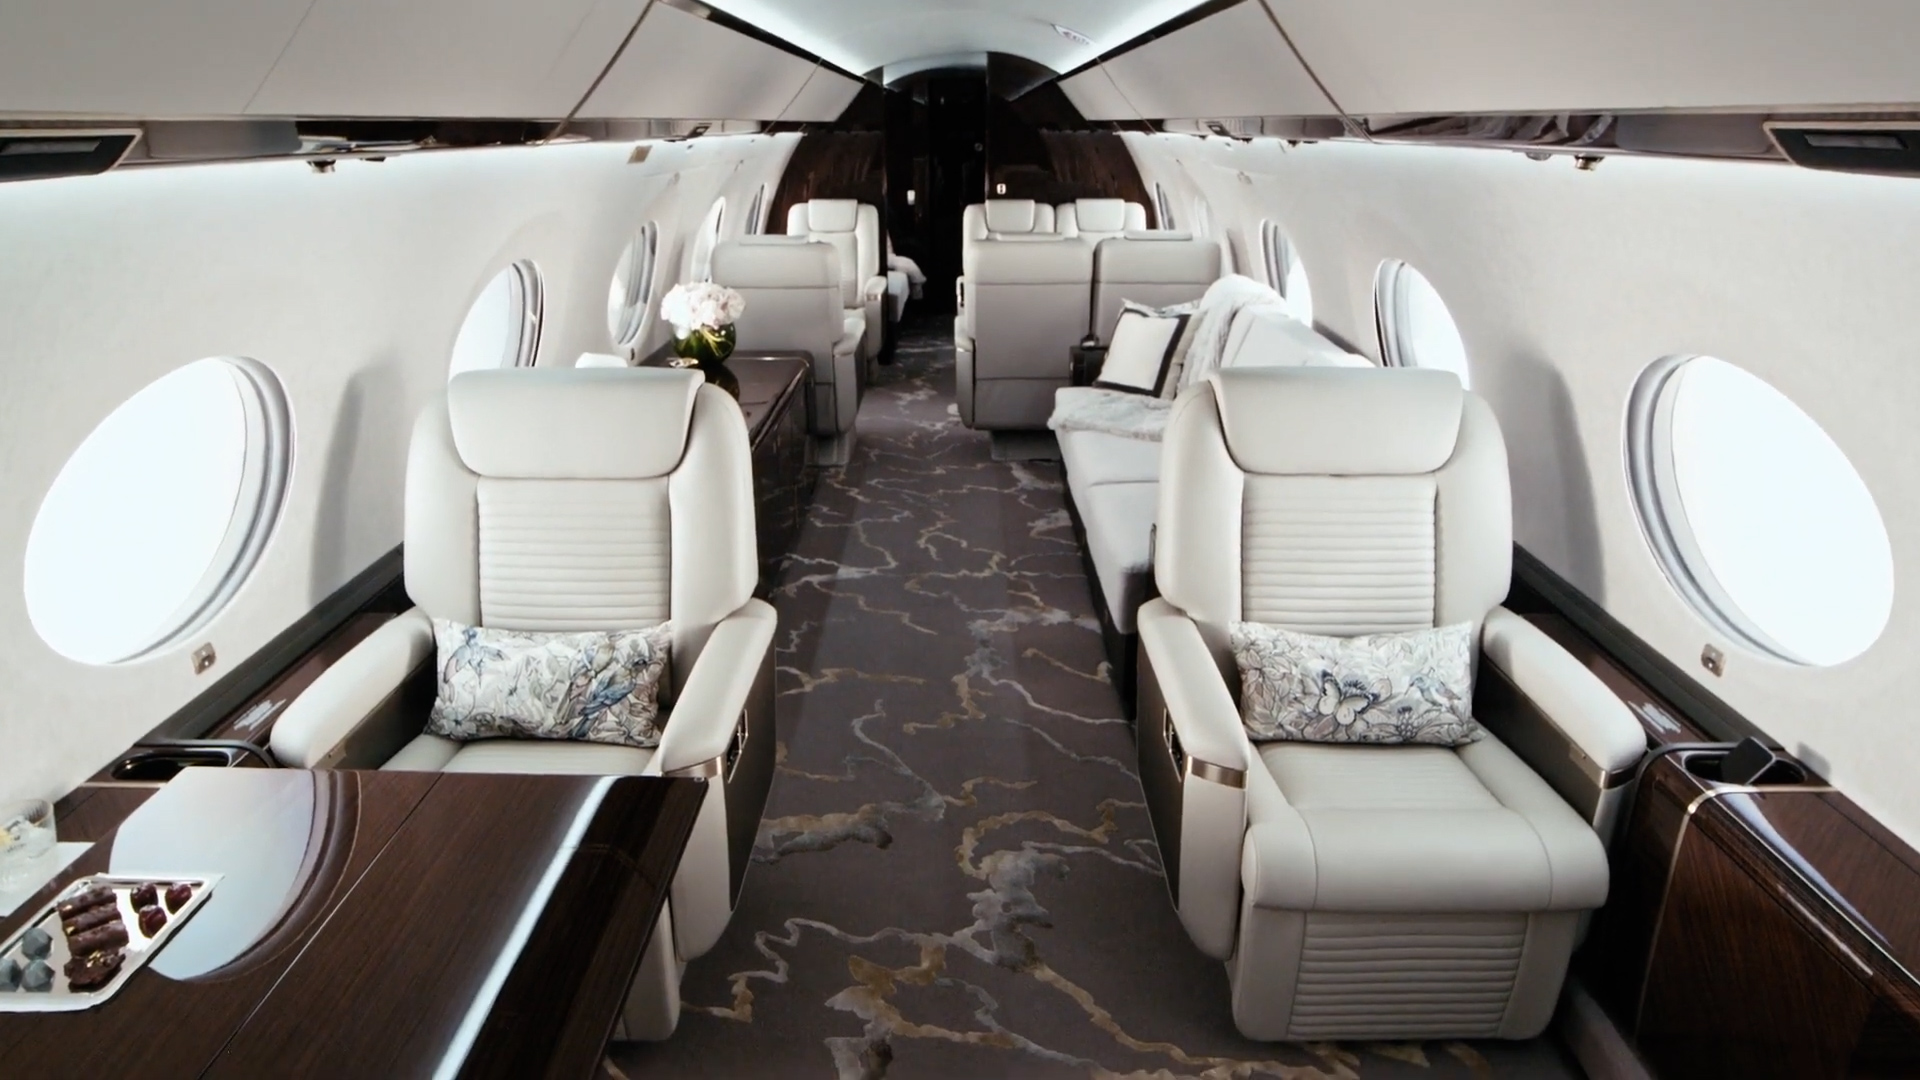 Cómo es por dentro el avión privado de USD 66 millones de Jeff Bezos:  cocina, cama “queen size” y bar personal - Infobae